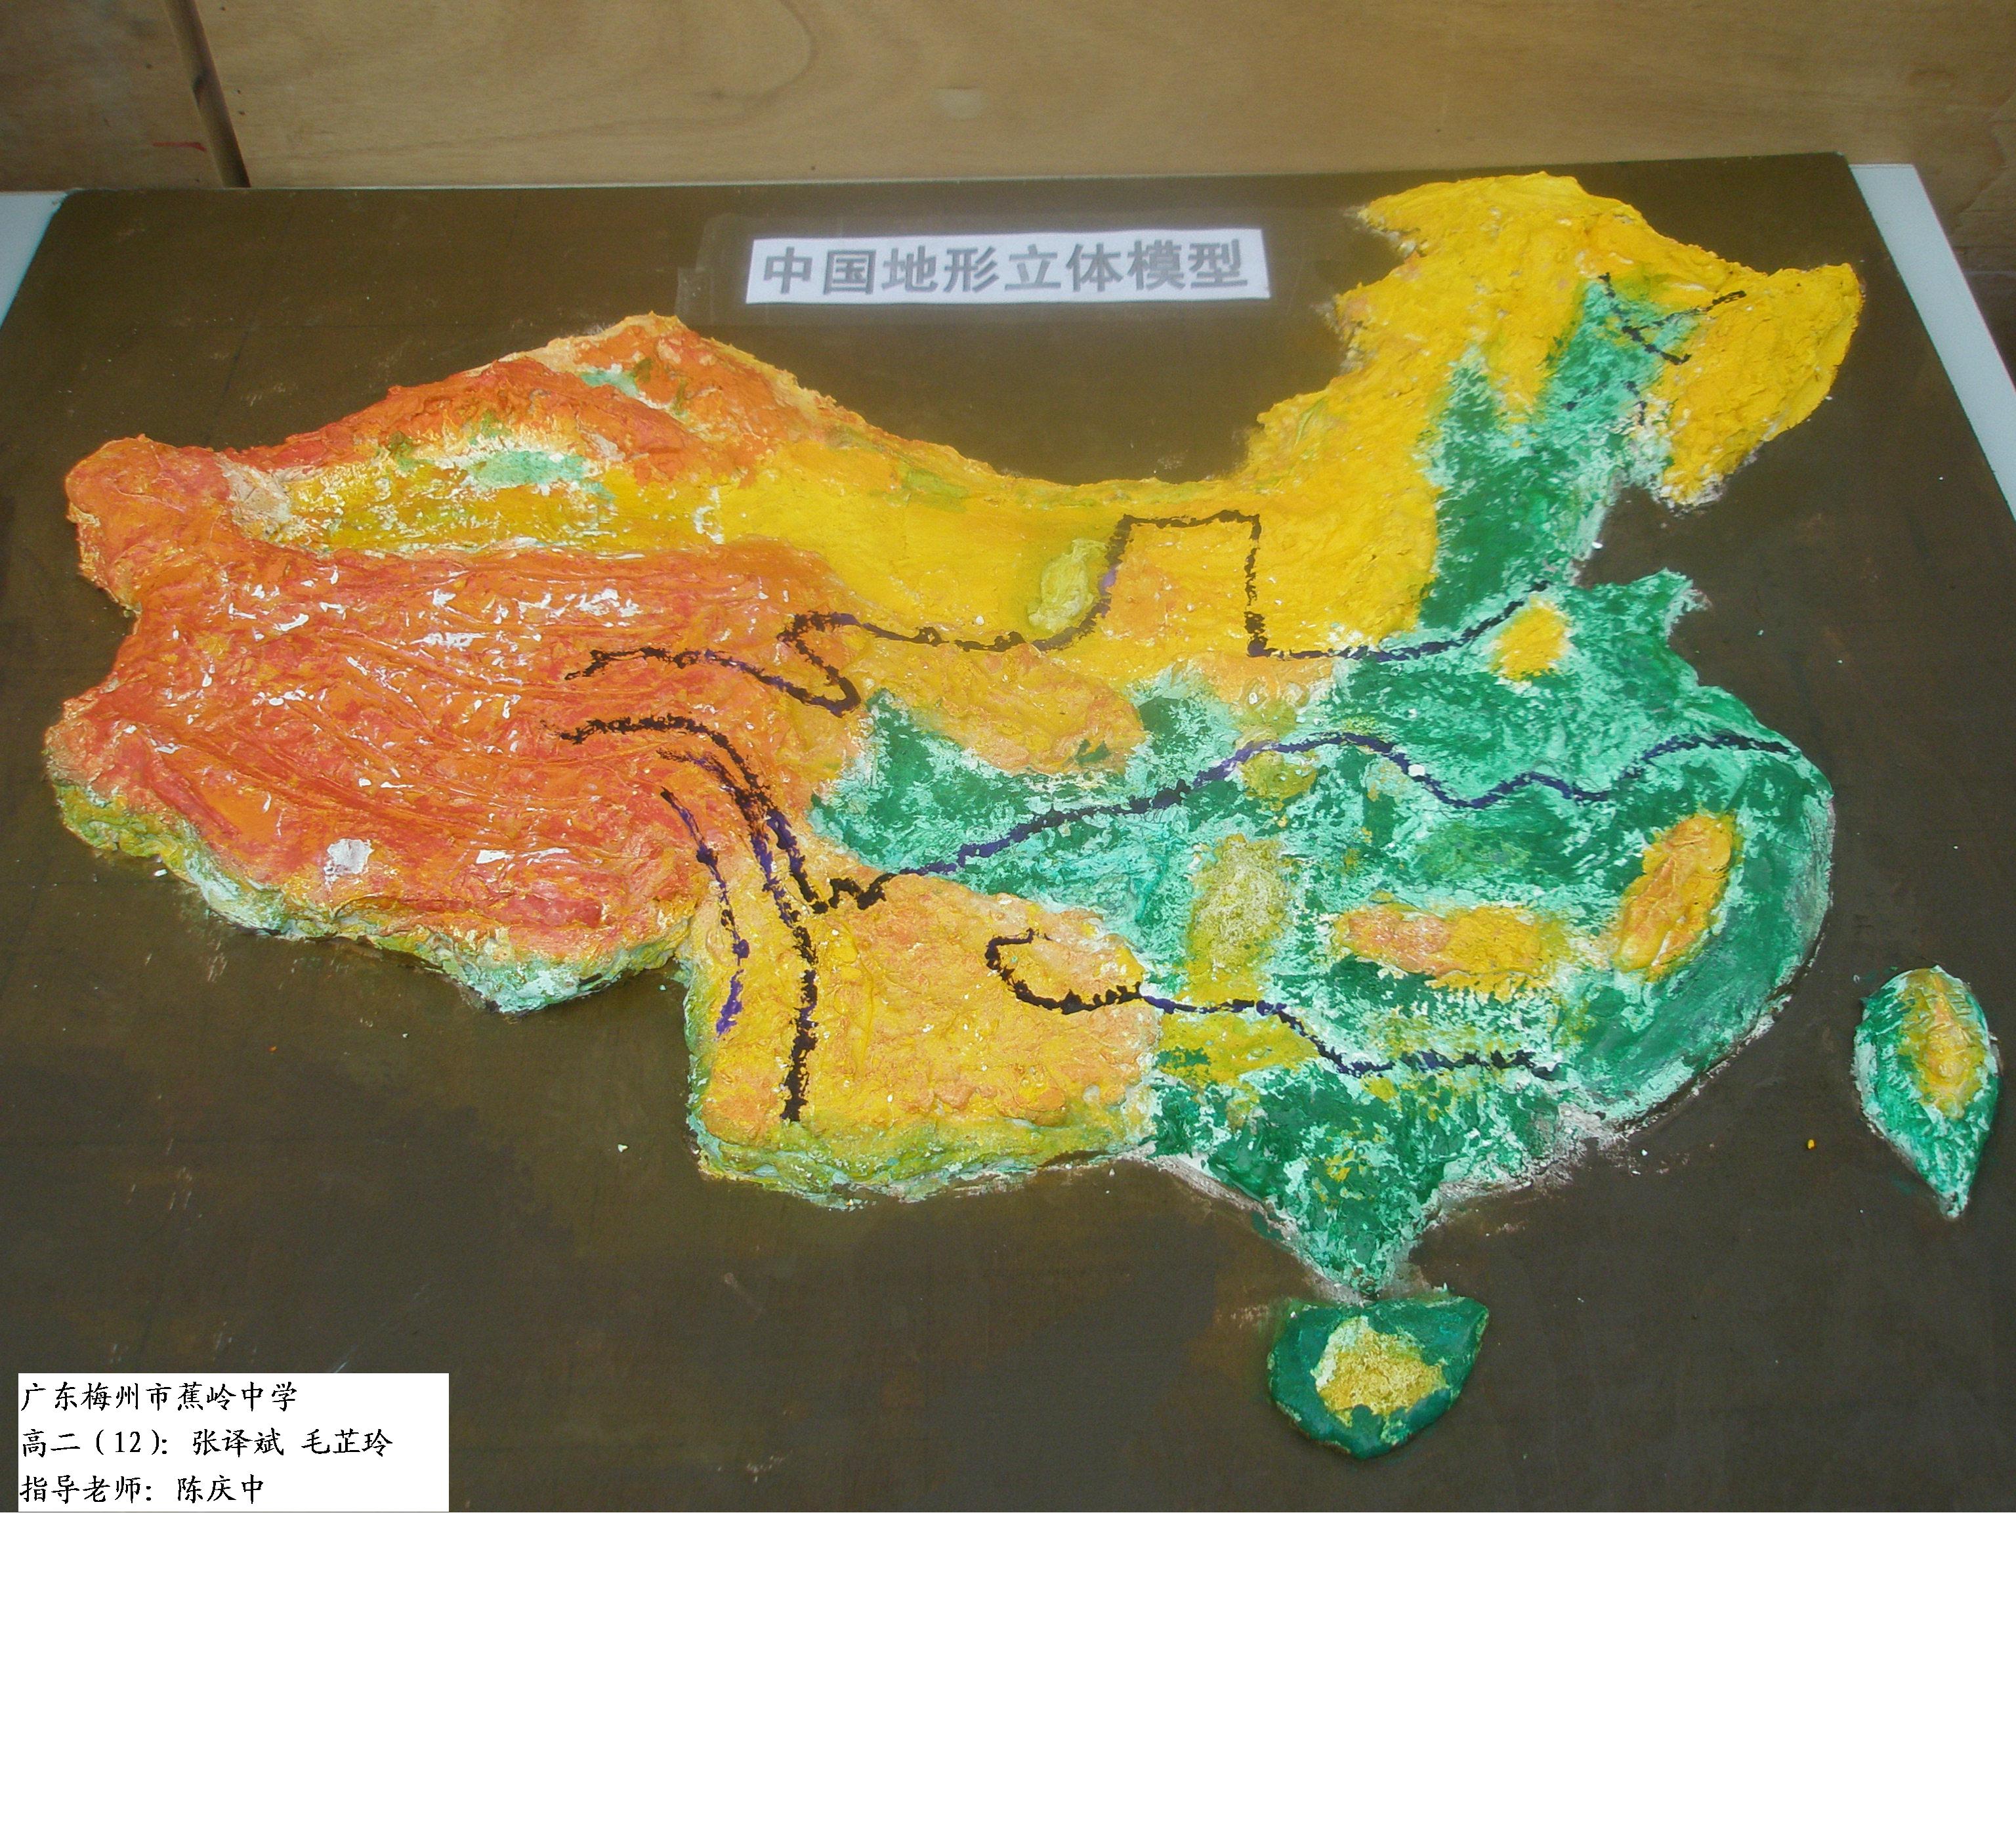 高中地理 课外阅读 自然地理     地形立体模型-2(图)      广东